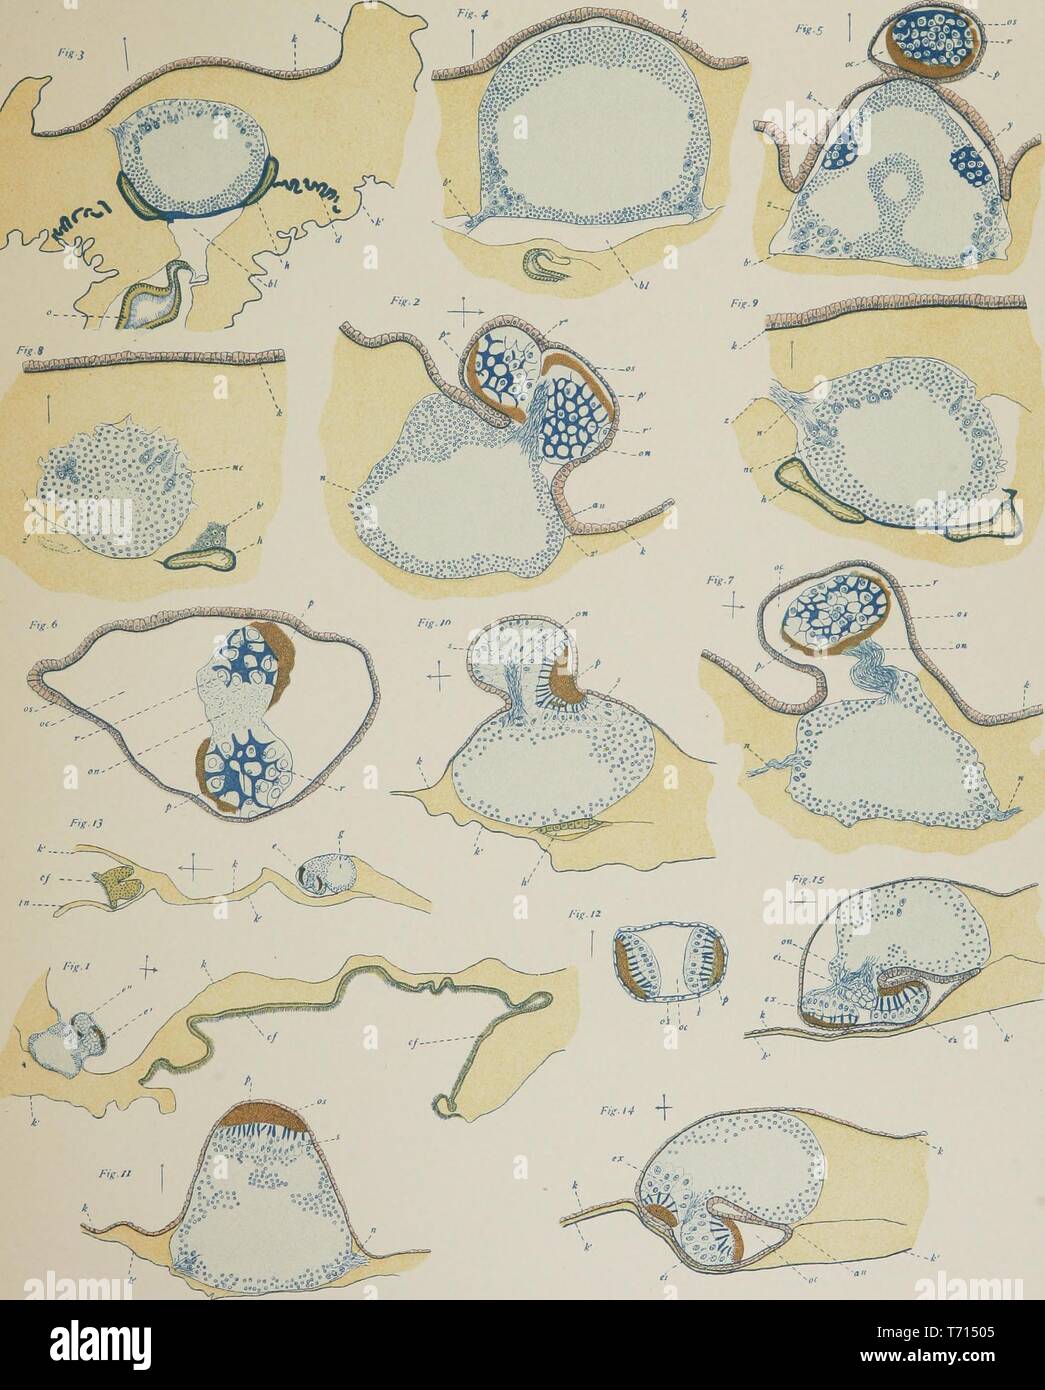 Ilustrado grabados del género salpa, del libro 'American Journal of Anatomy" por la Johns Hopkins University, 1508. Cortesía de Internet Archive. () Foto de stock